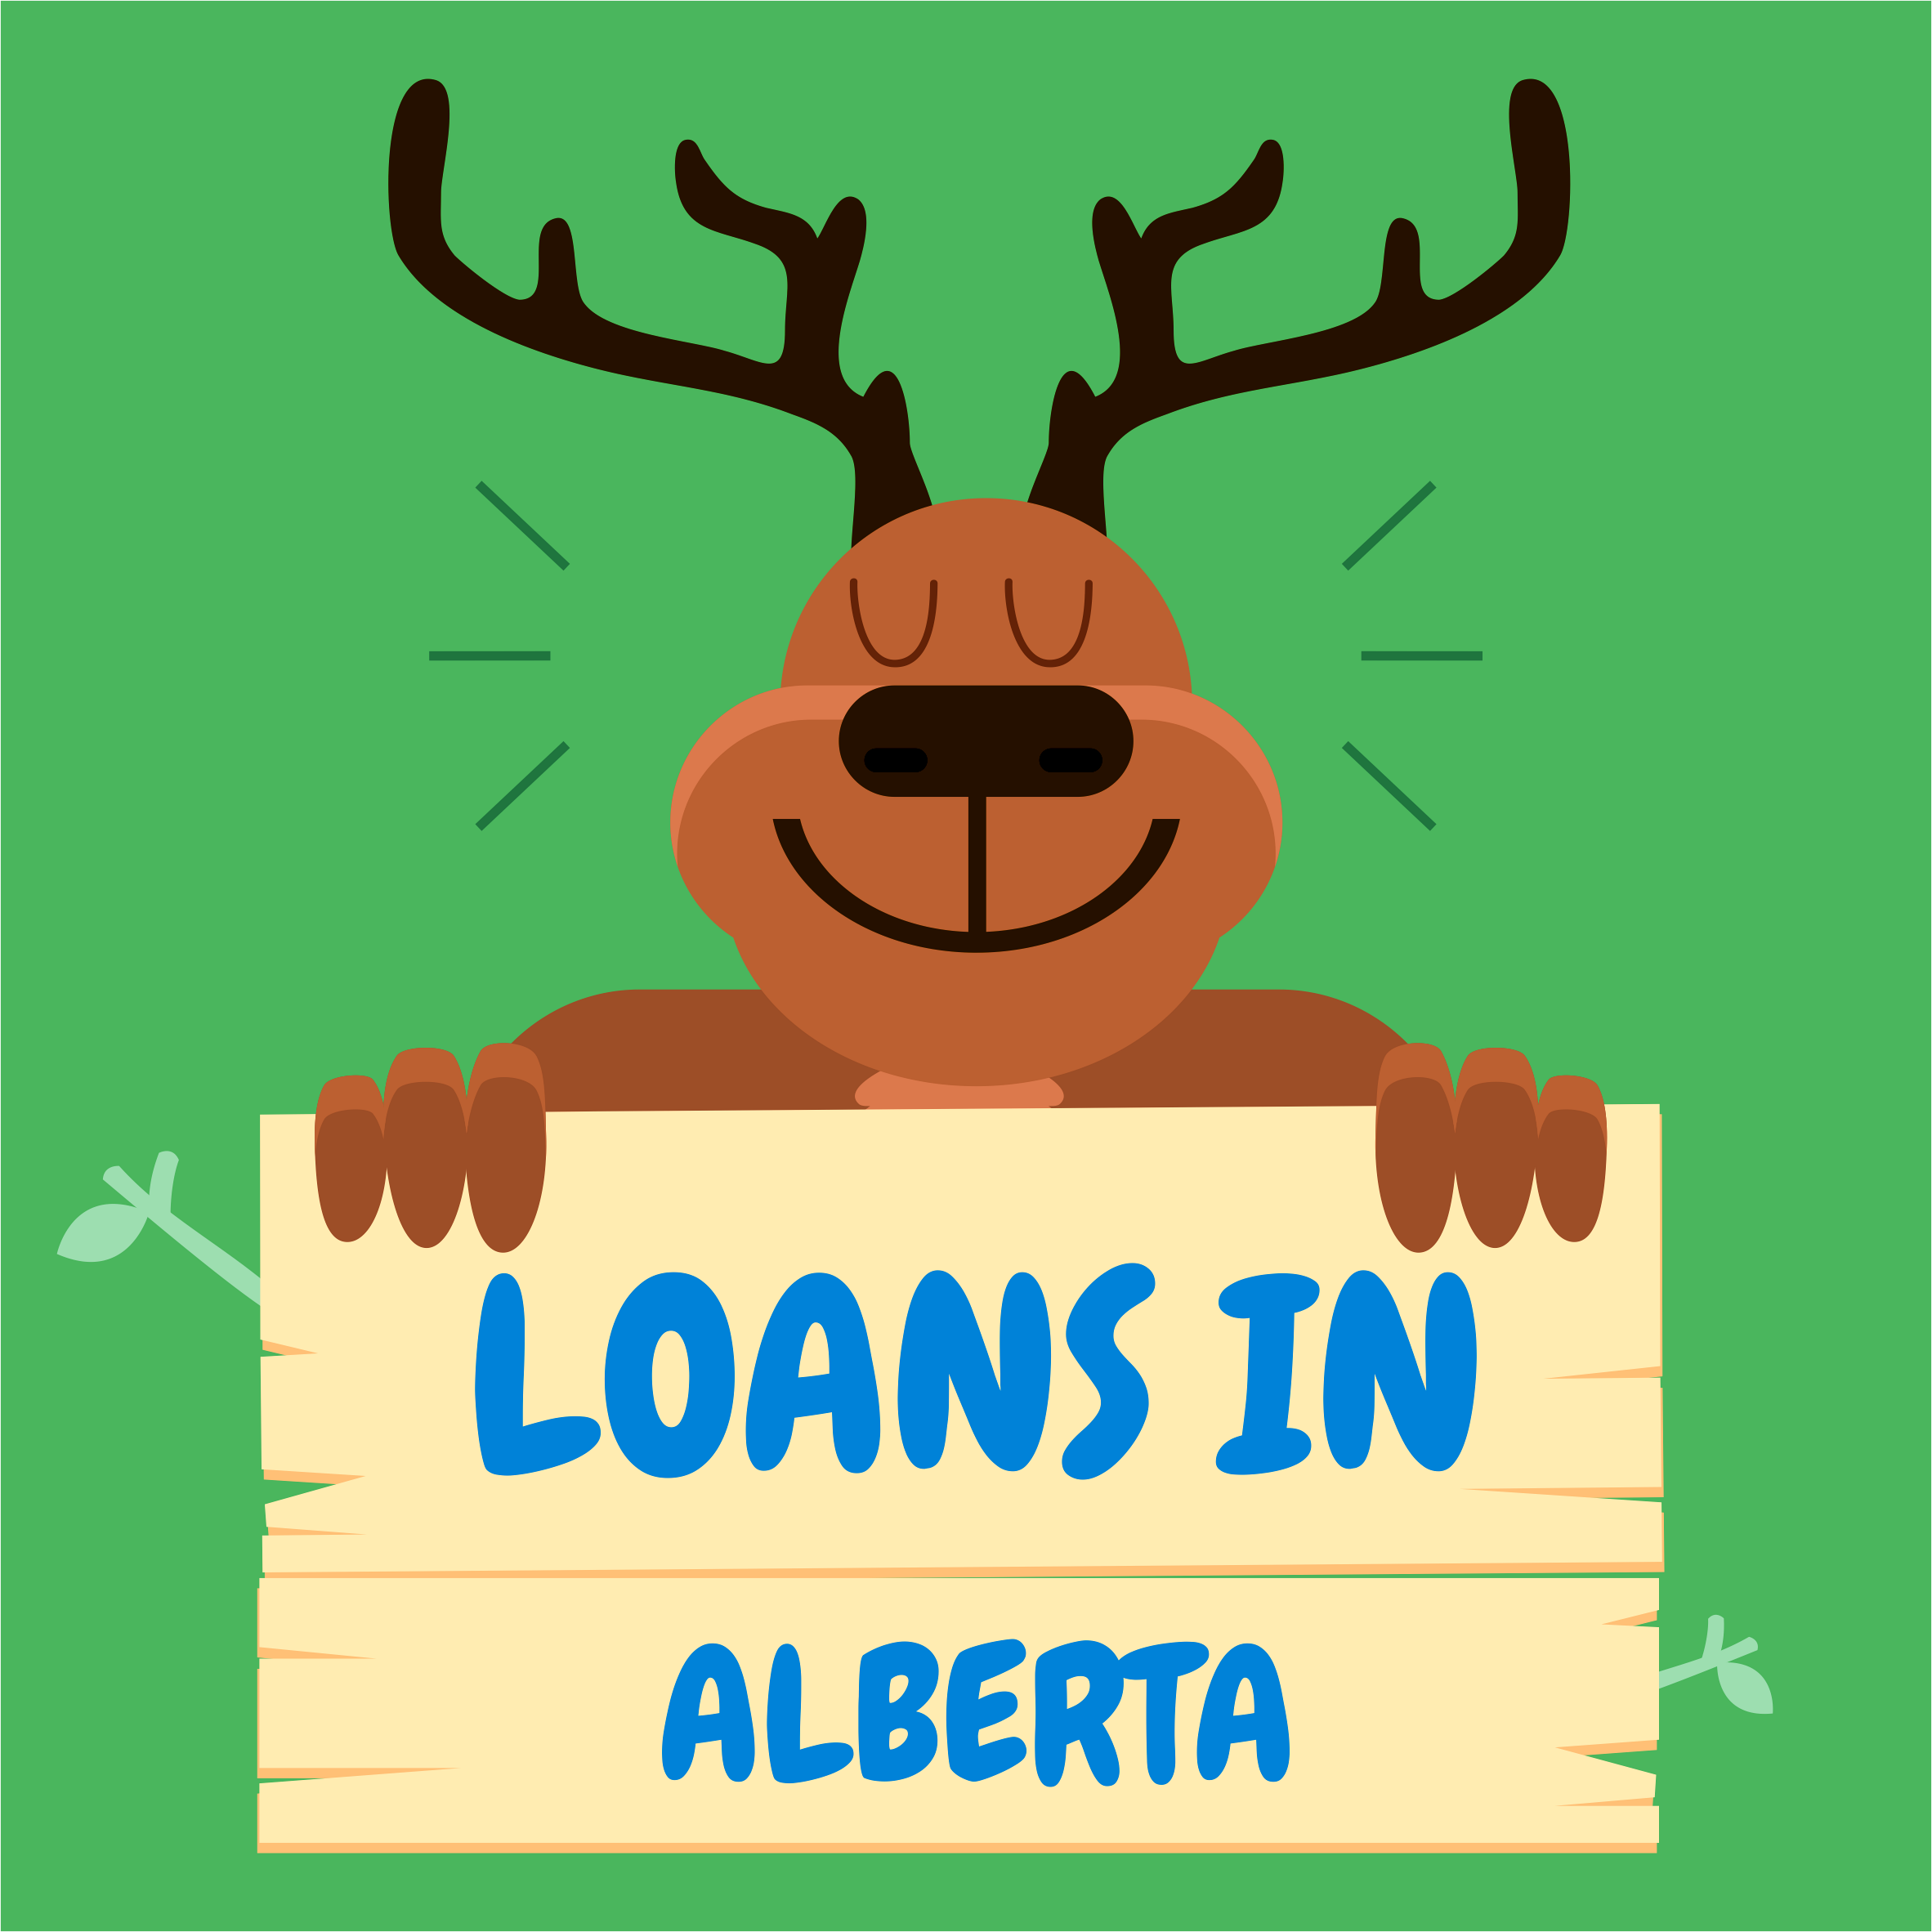 Loans in Alberta